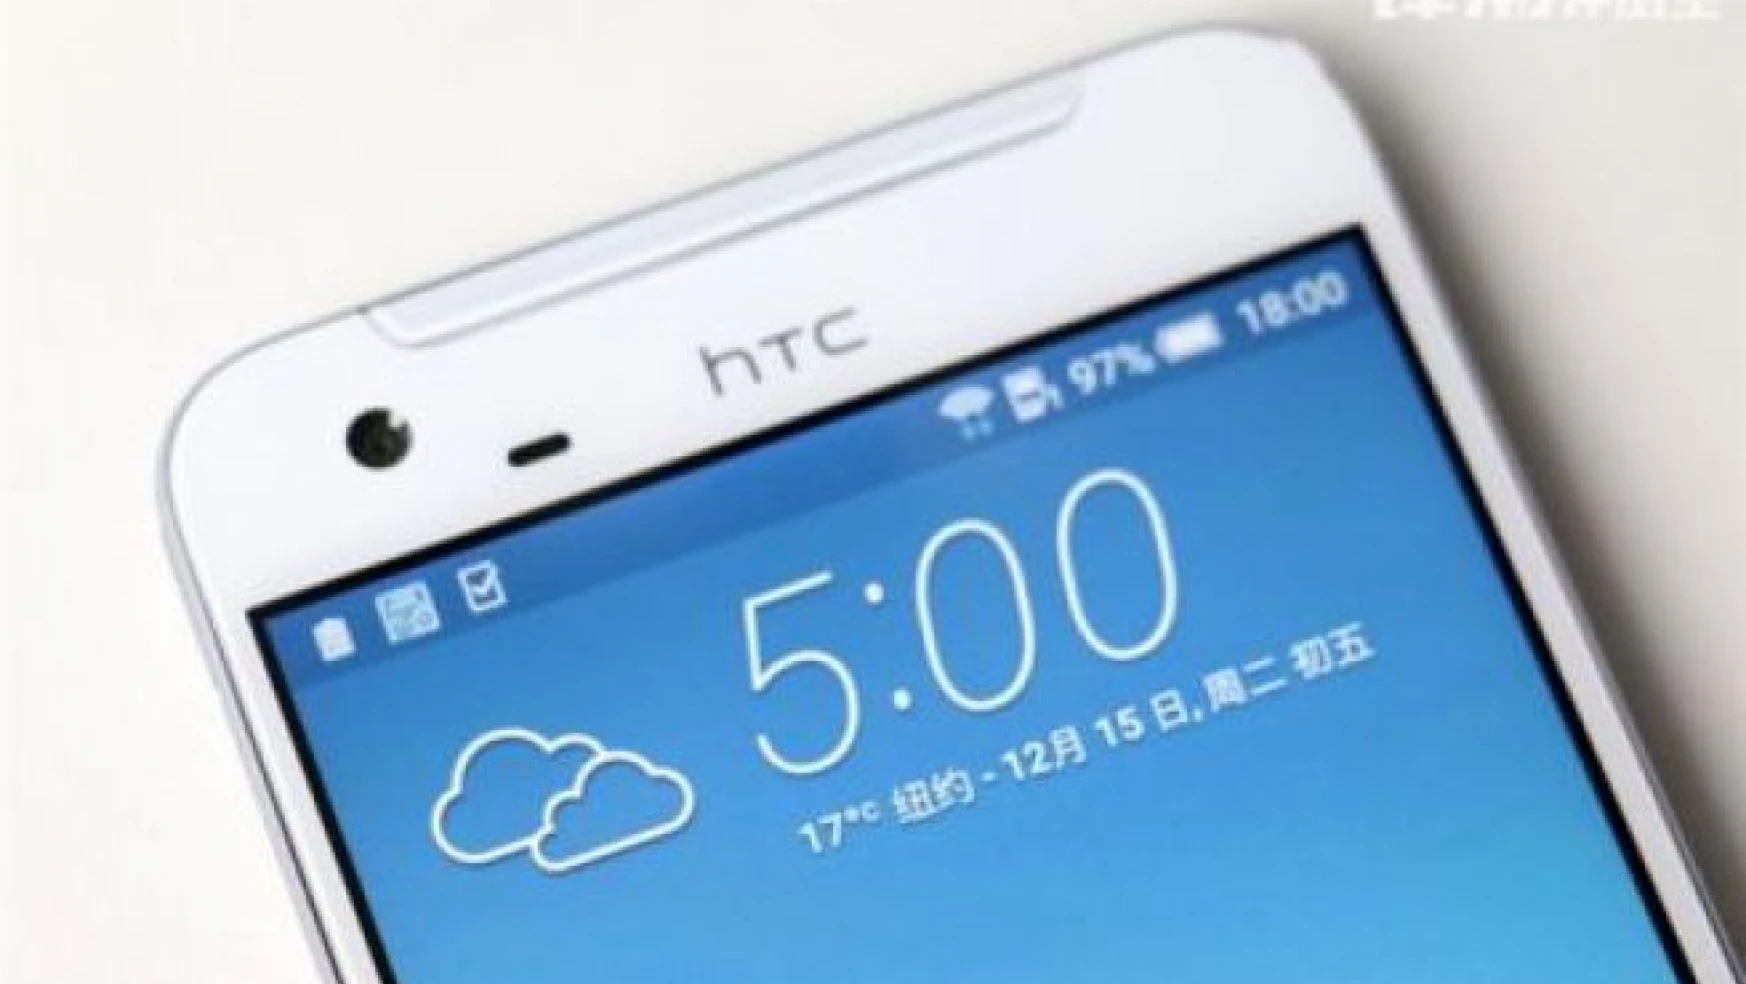 HTC One X9 çıkış tarihi, teknik özellikleri, fiyatı ve yeni sızdırılmış görseller!